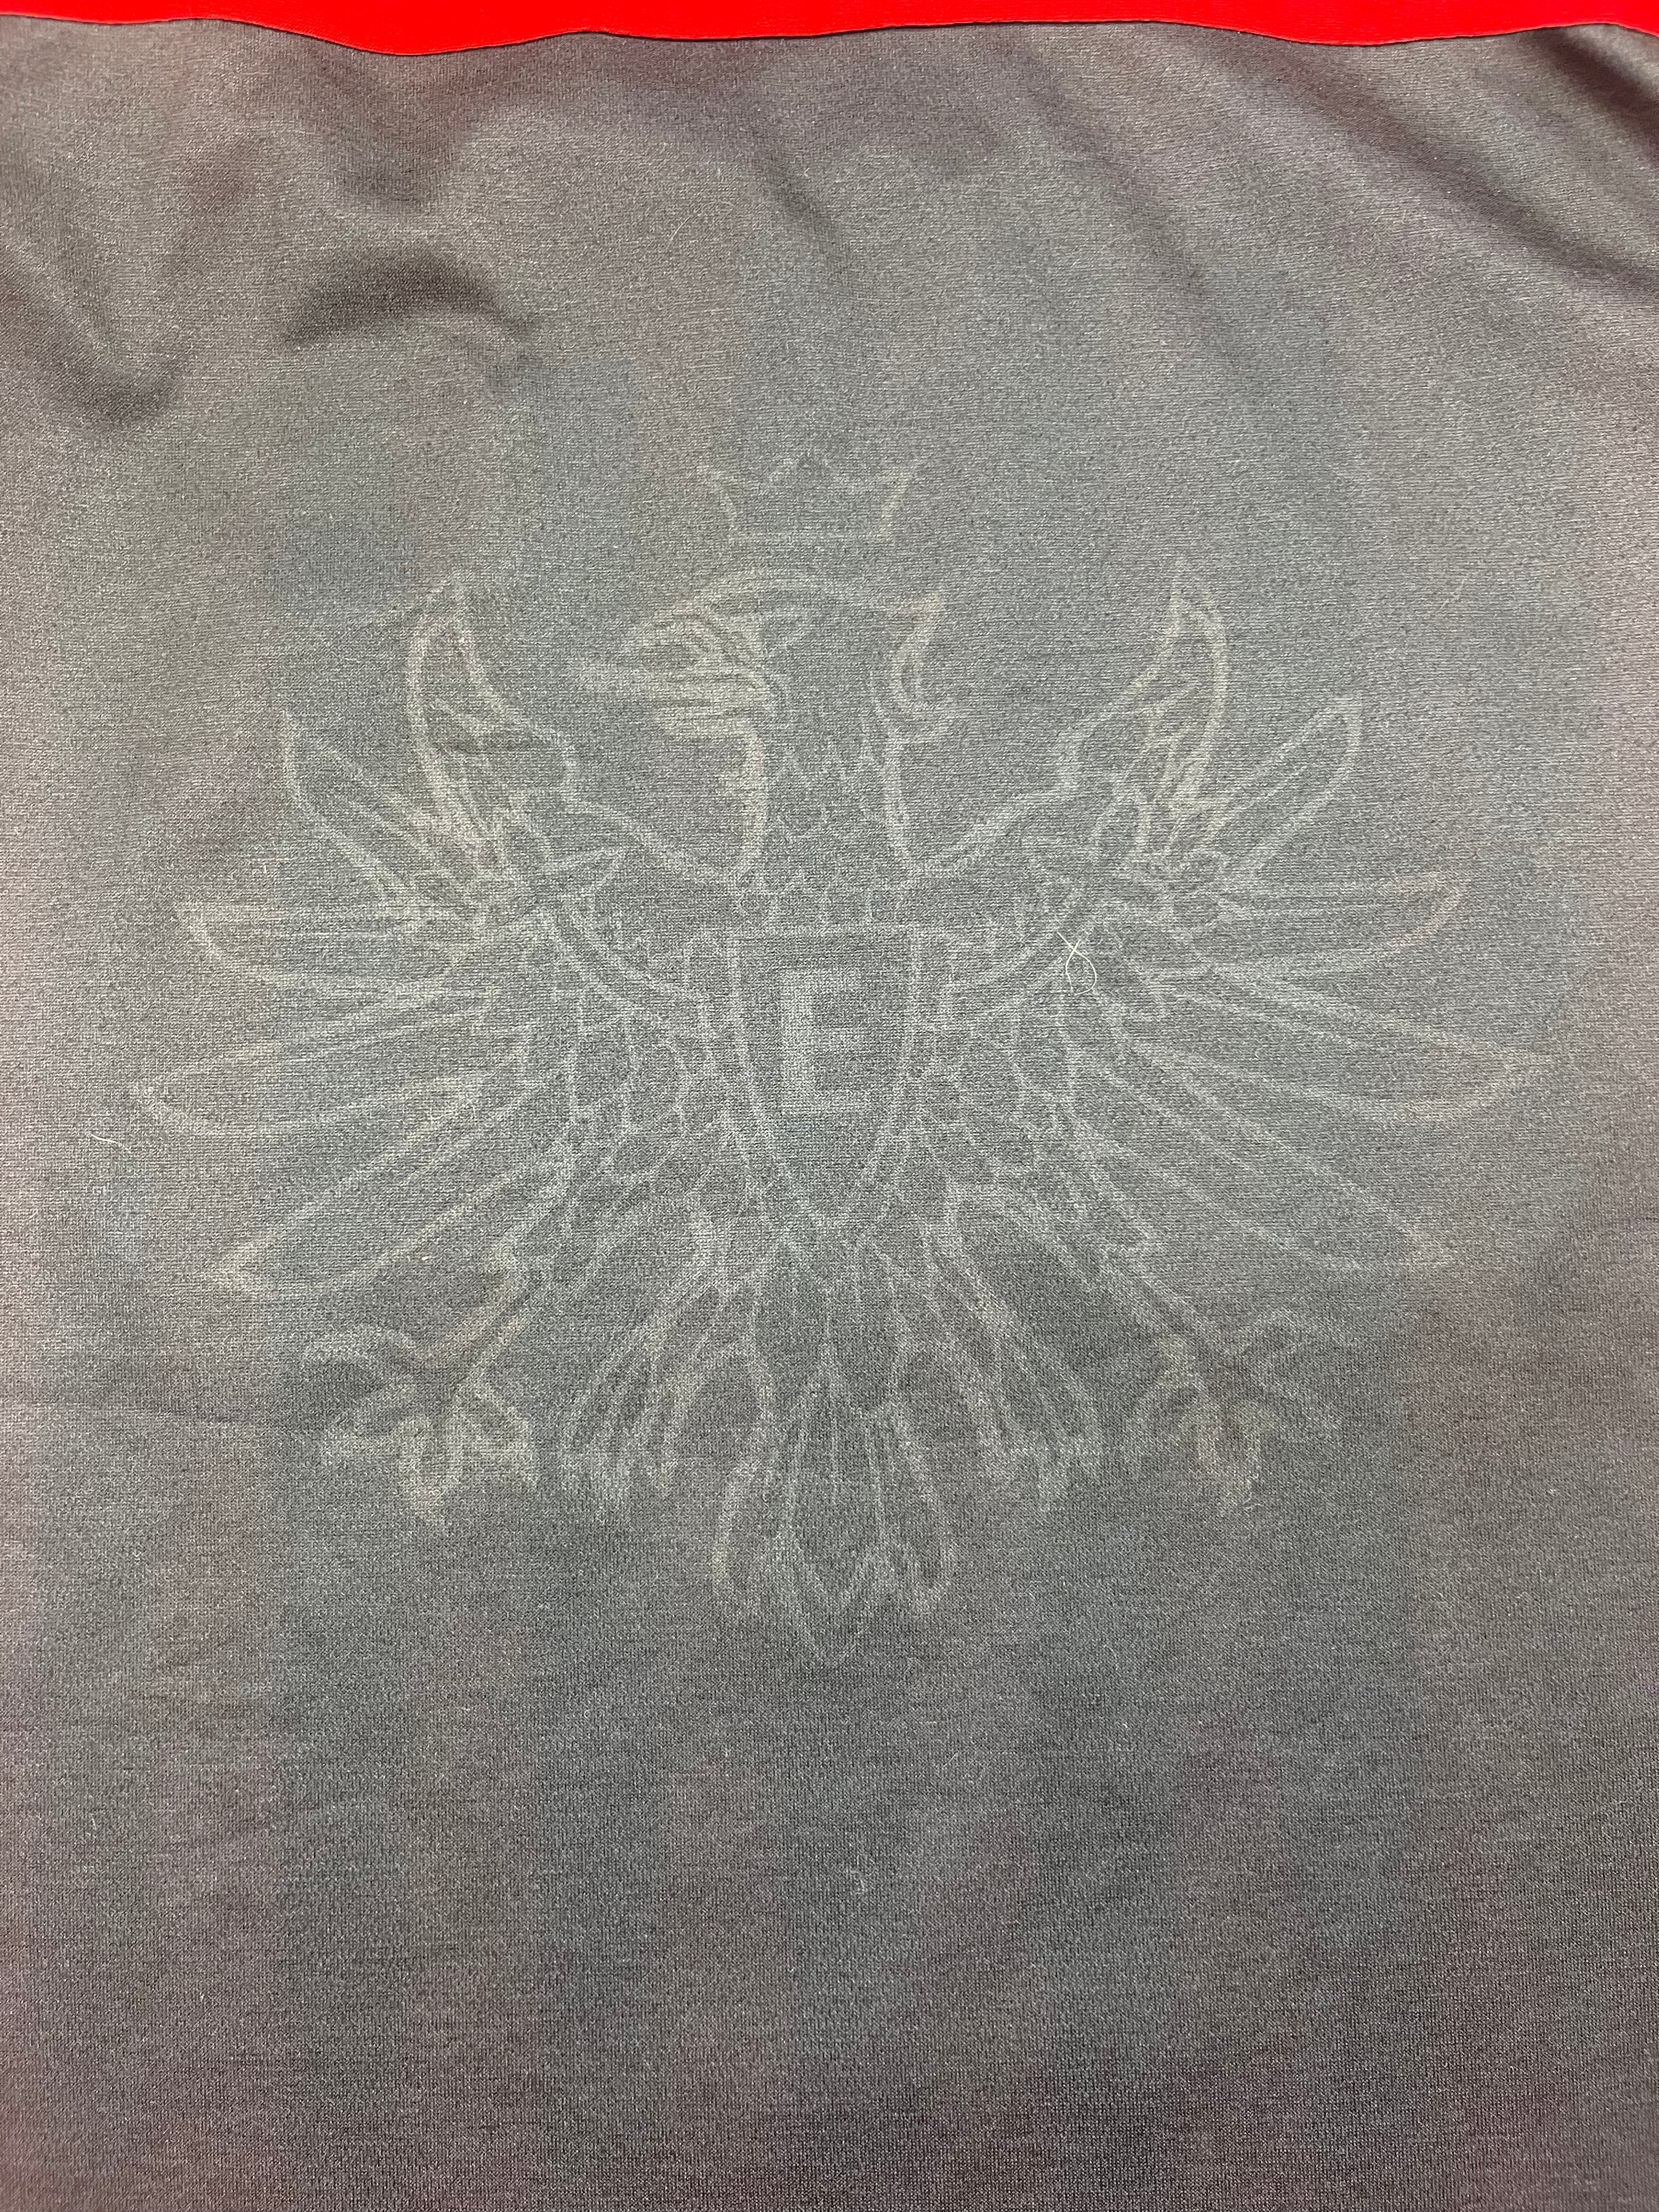 Camiseta de local del Eintracht Frankfurt 2012/13 (M) 9/10